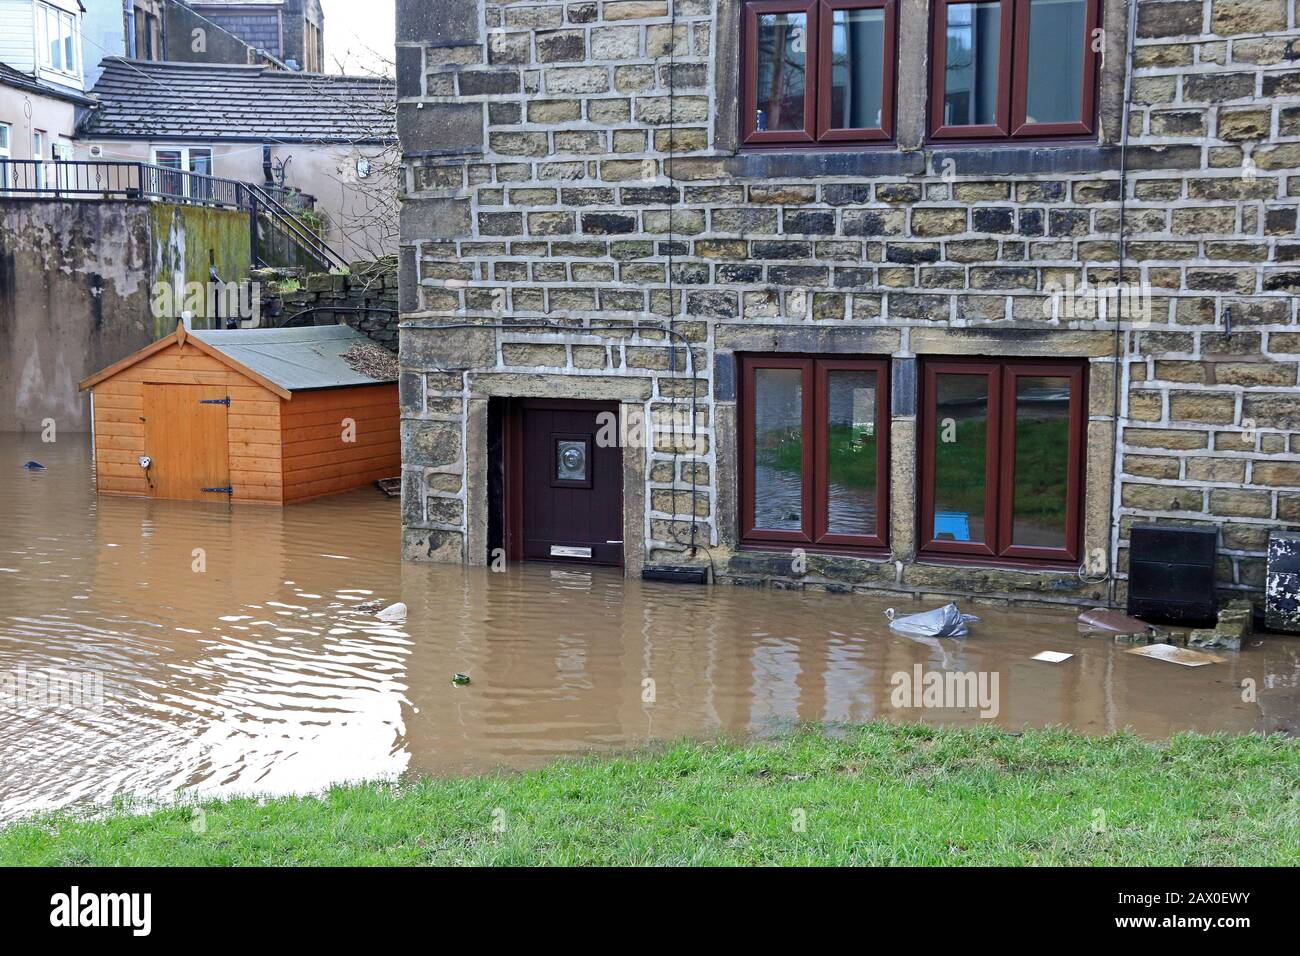 Maison inondée par une inondation éclair, Mytholmroyd, Yorkshire de l'Ouest 9 février 2020 Banque D'Images